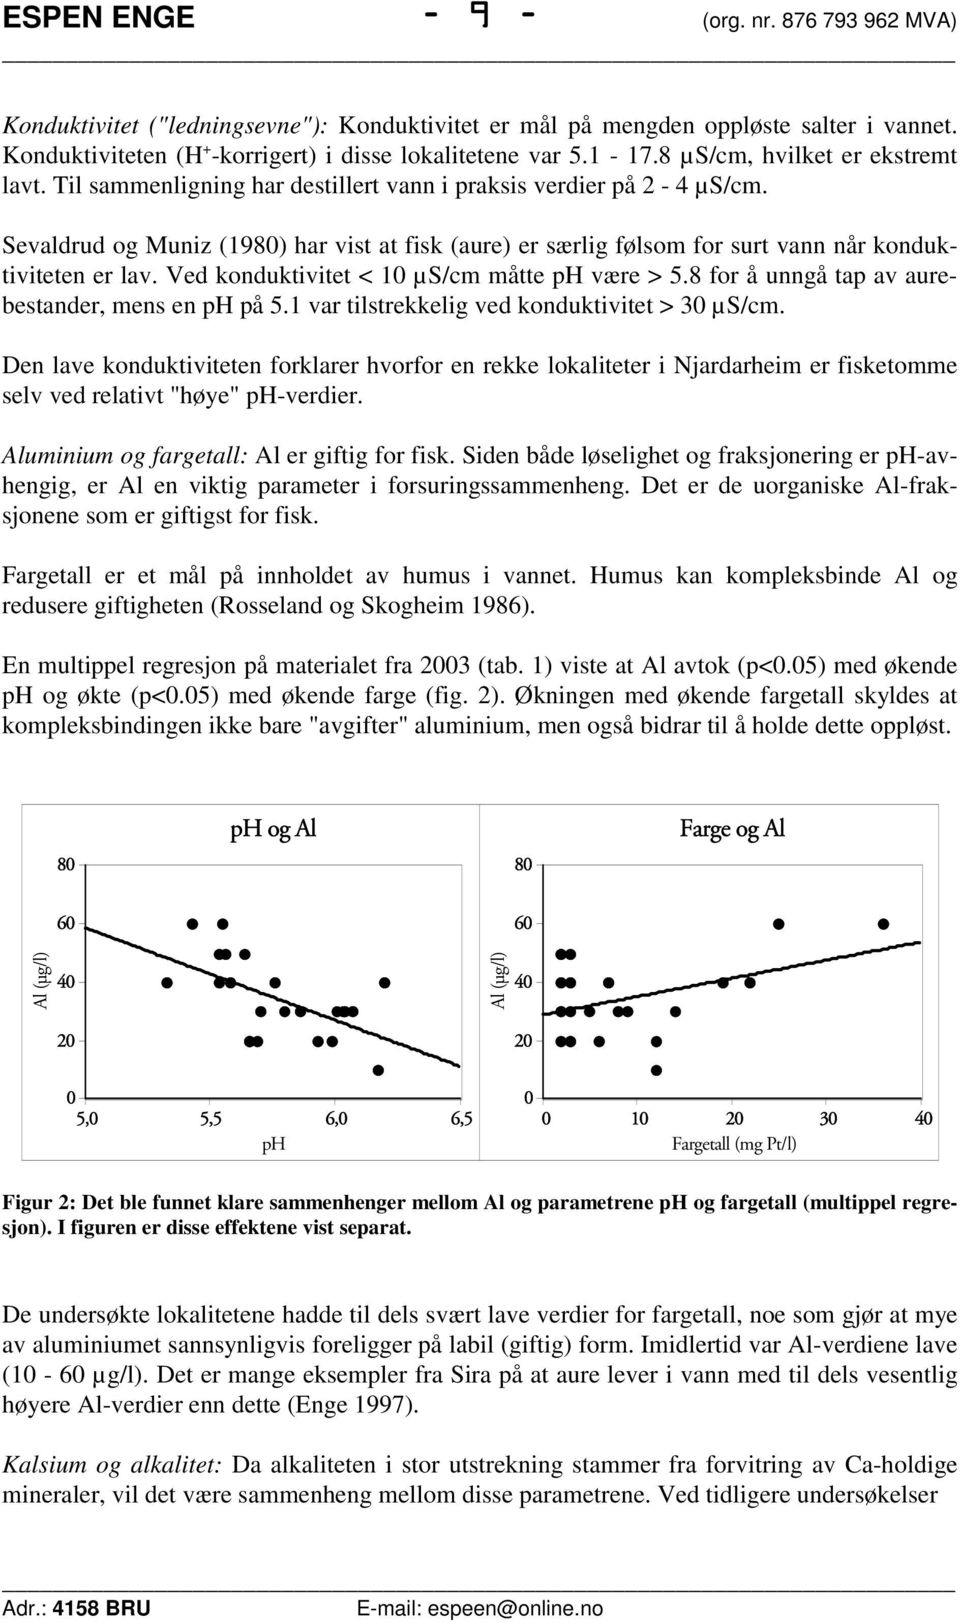 Sevaldrud og Muniz (1980) har vist at fisk (aure) er særlig følsom for surt vann når konduktiviteten er lav. Ved konduktivitet < 10 µs/cm måtte ph være > 5.